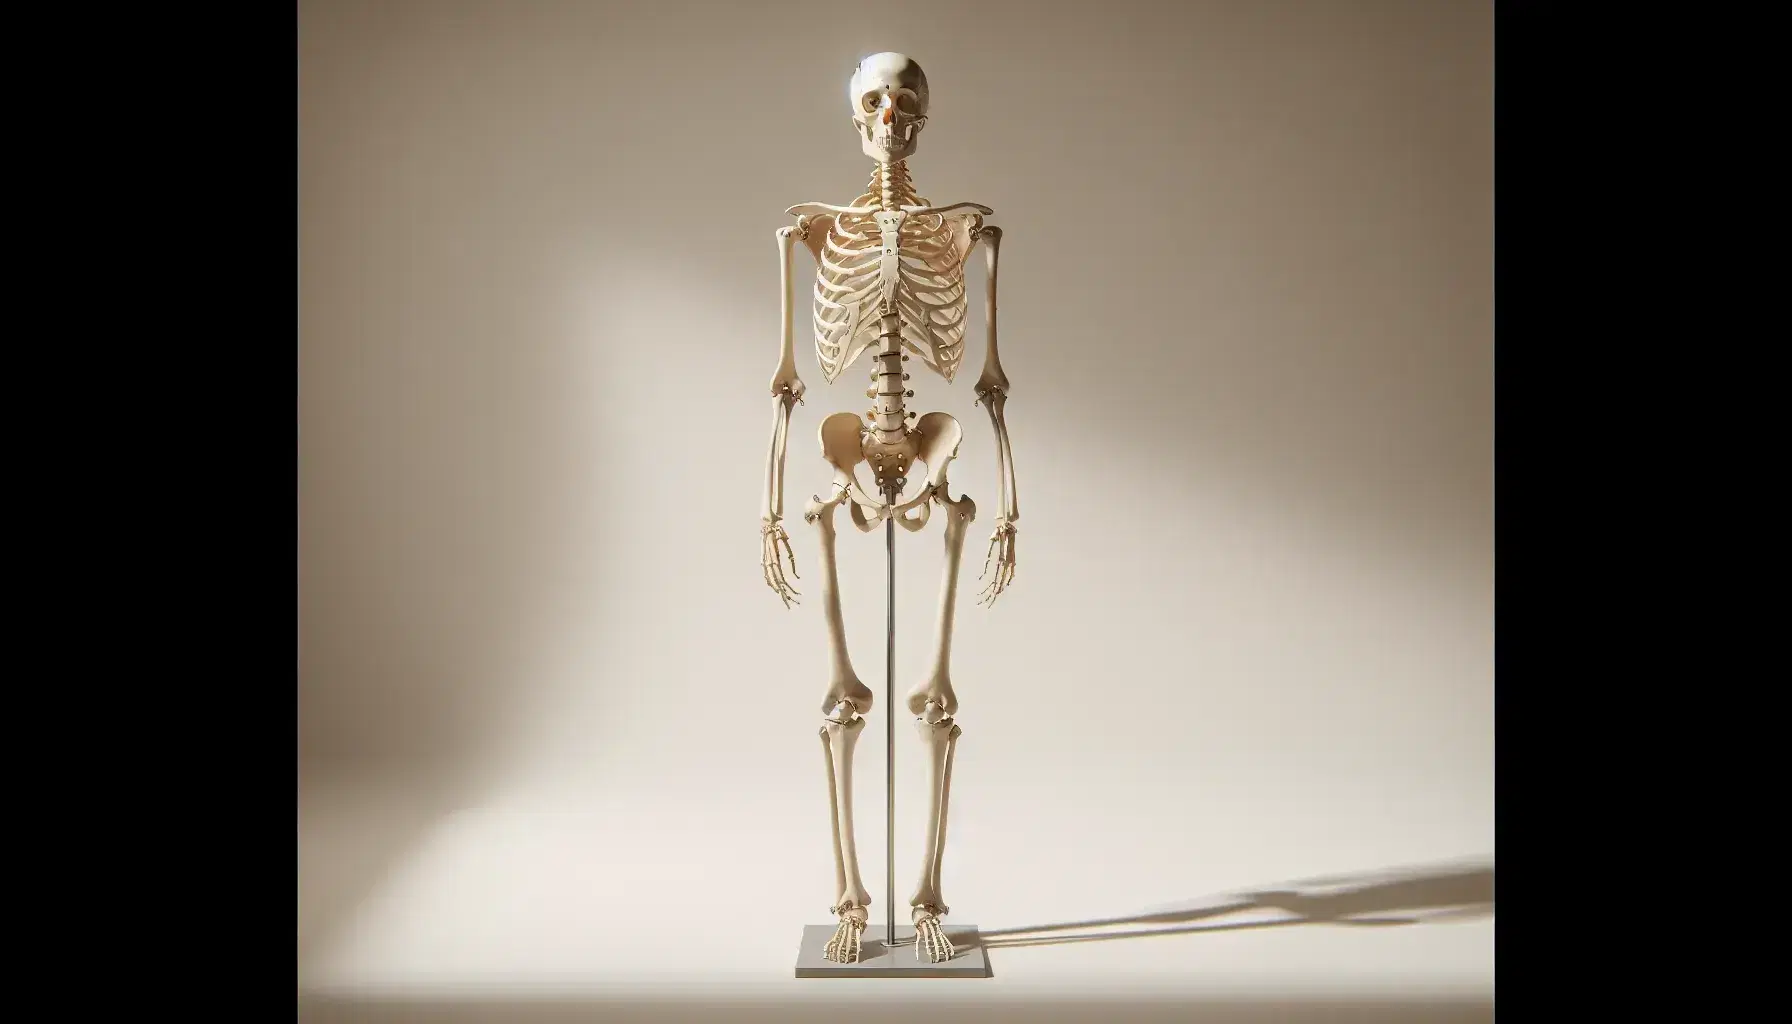 Esqueleto humano completo de pie en posición frontal con articulaciones ligeramente flexionadas, montado en soporte metálico, sin elementos distractores y con iluminación suave que resalta detalles óseos.